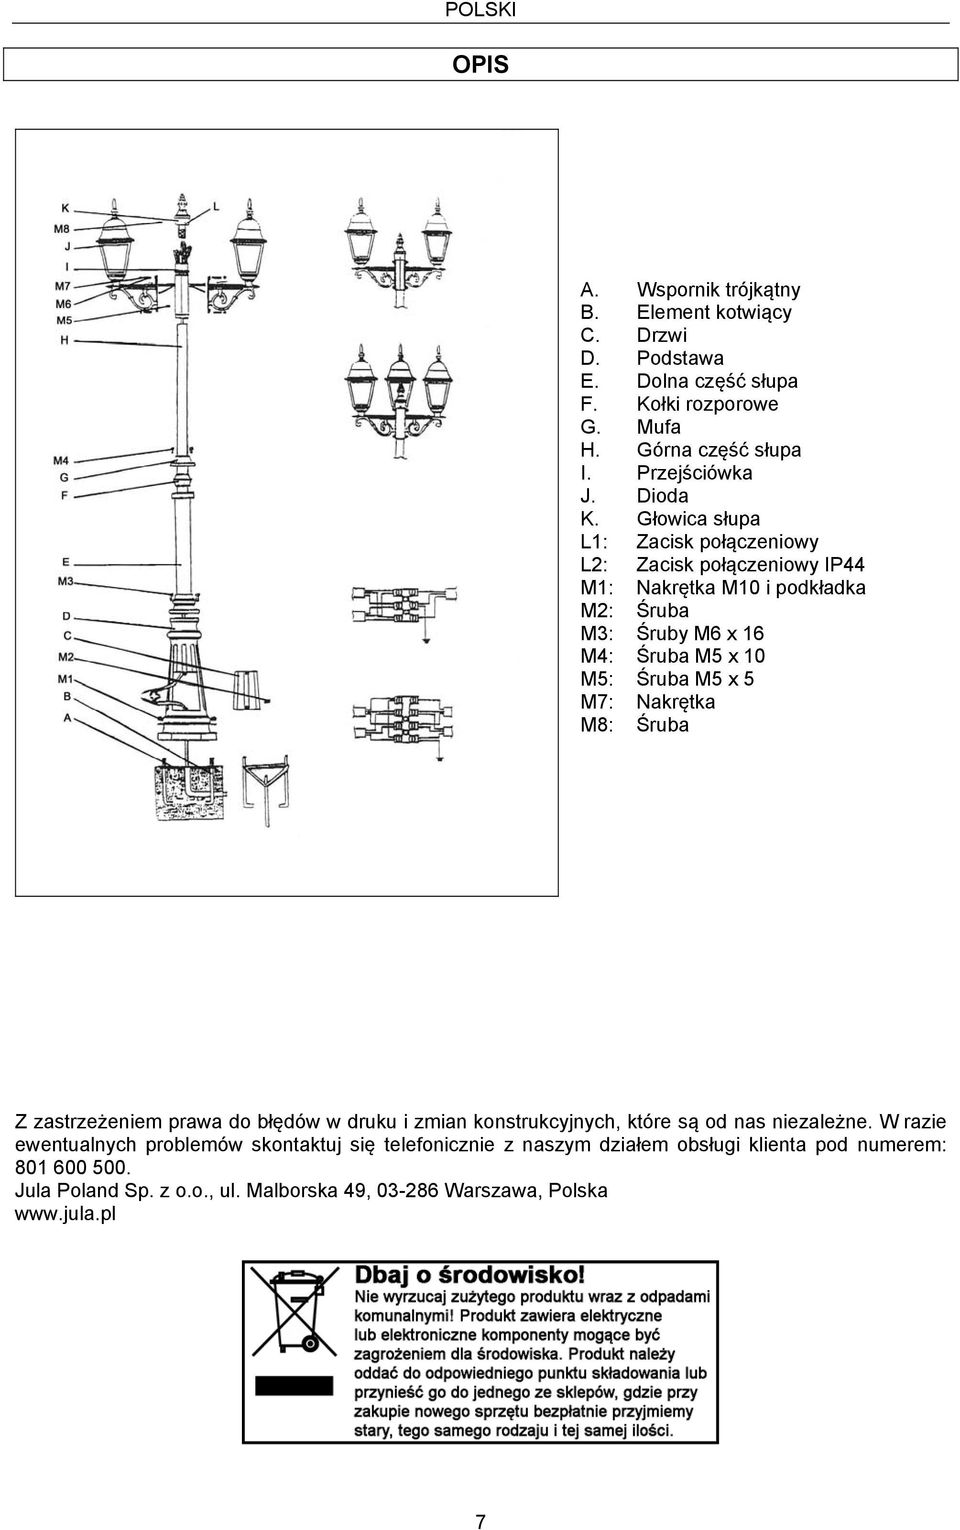 Głowica słupa L1: Zacisk połączeniowy L2: Zacisk połączeniowy IP44 M1: Nakrętka M10 i podkładka M2: Śruba M3: Śruby M6 x 16 M4: Śruba M5 x 10 M5: Śruba M5 x 5